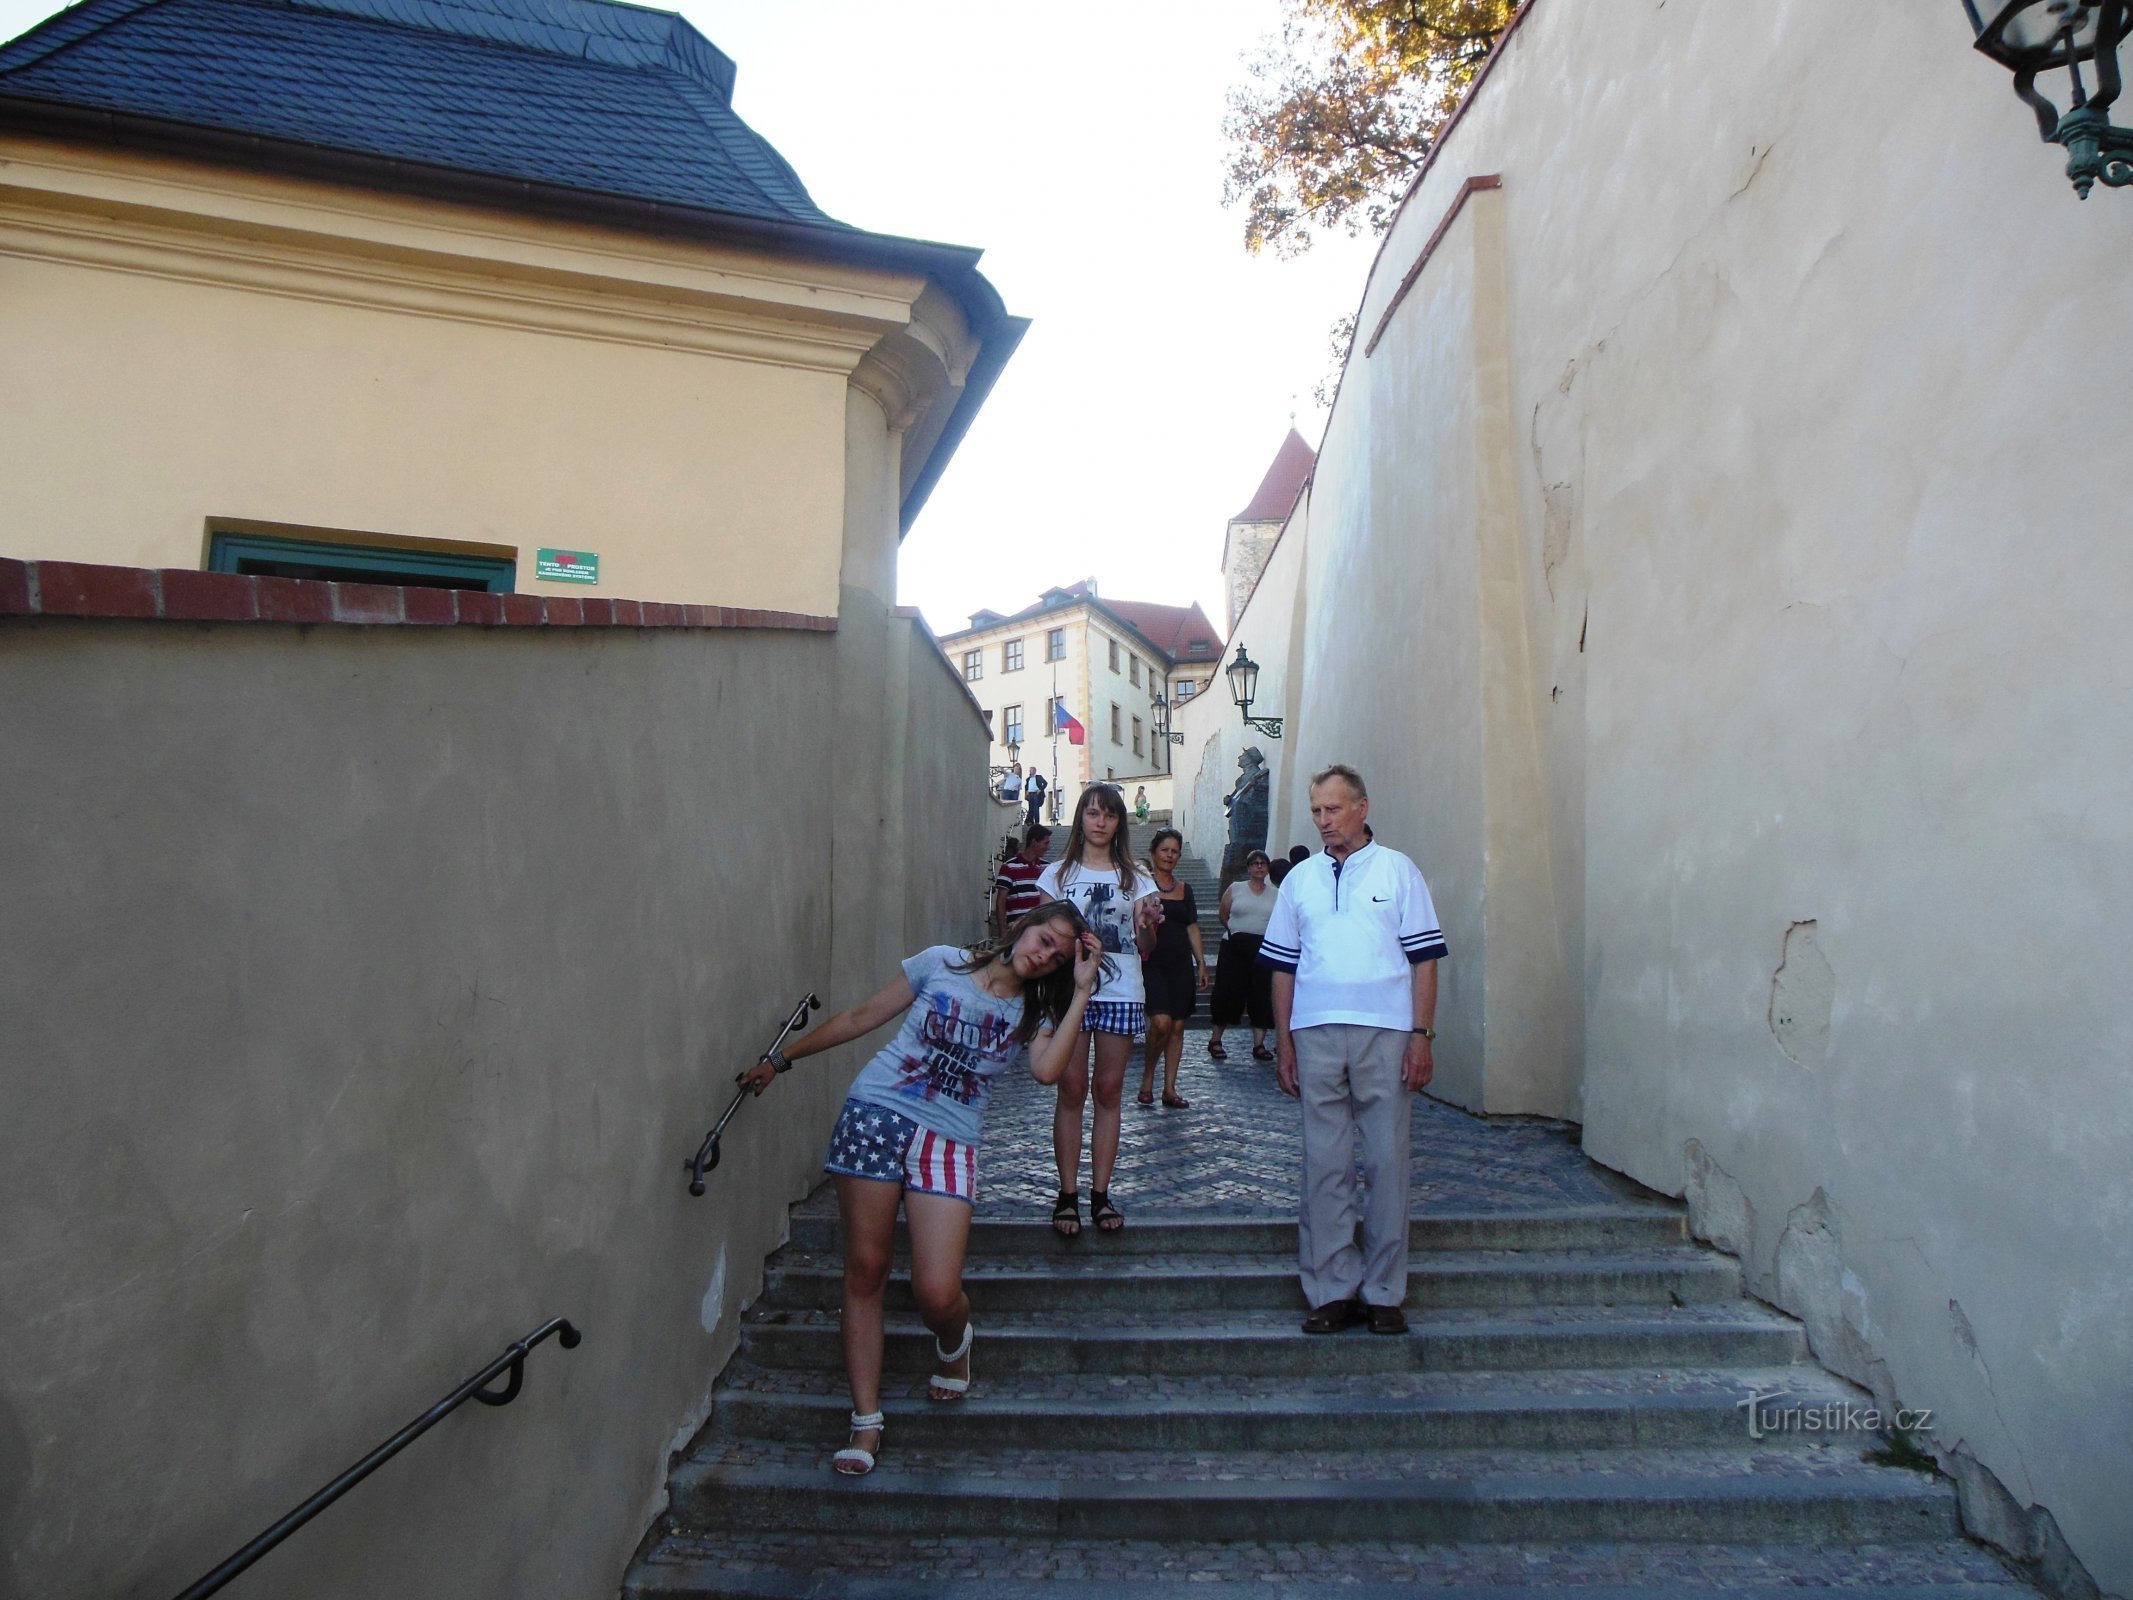 Subindo as escadas do velho castelo, subindo as escadas de pedra... como Waldemar Matuška cantou